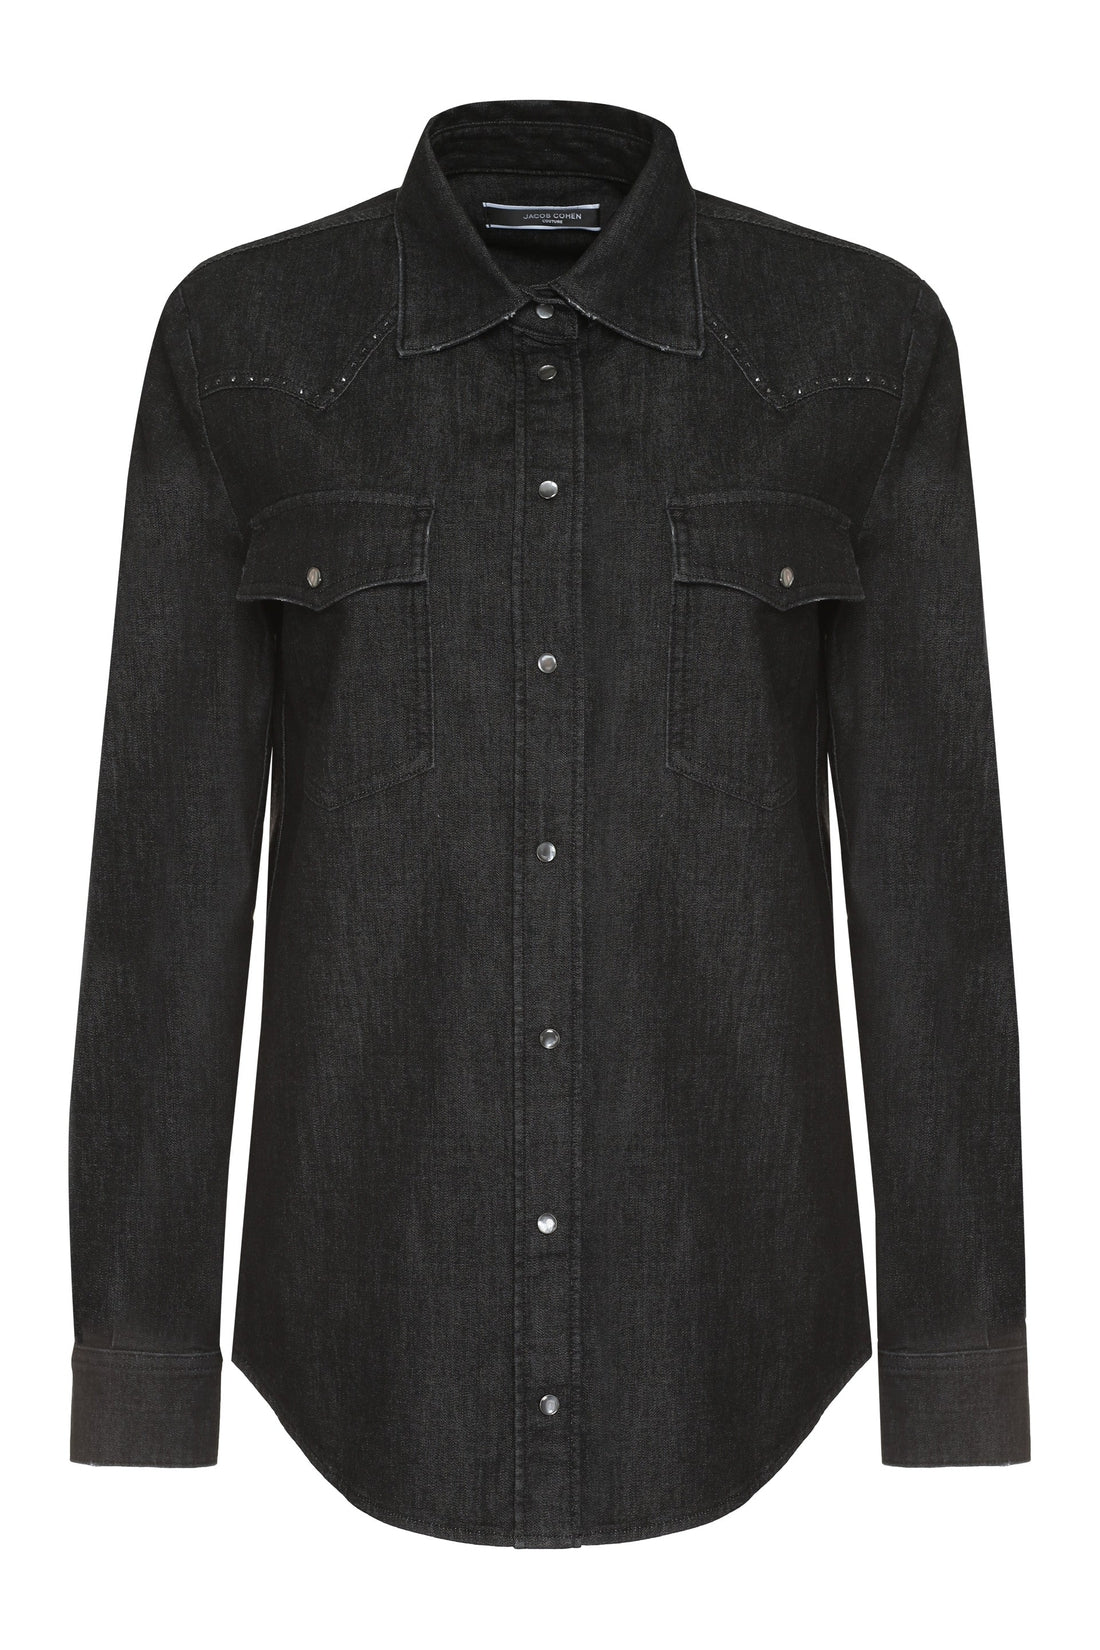 Jacob Cohen-OUTLET-SALE-Cotton shirt-ARCHIVIST